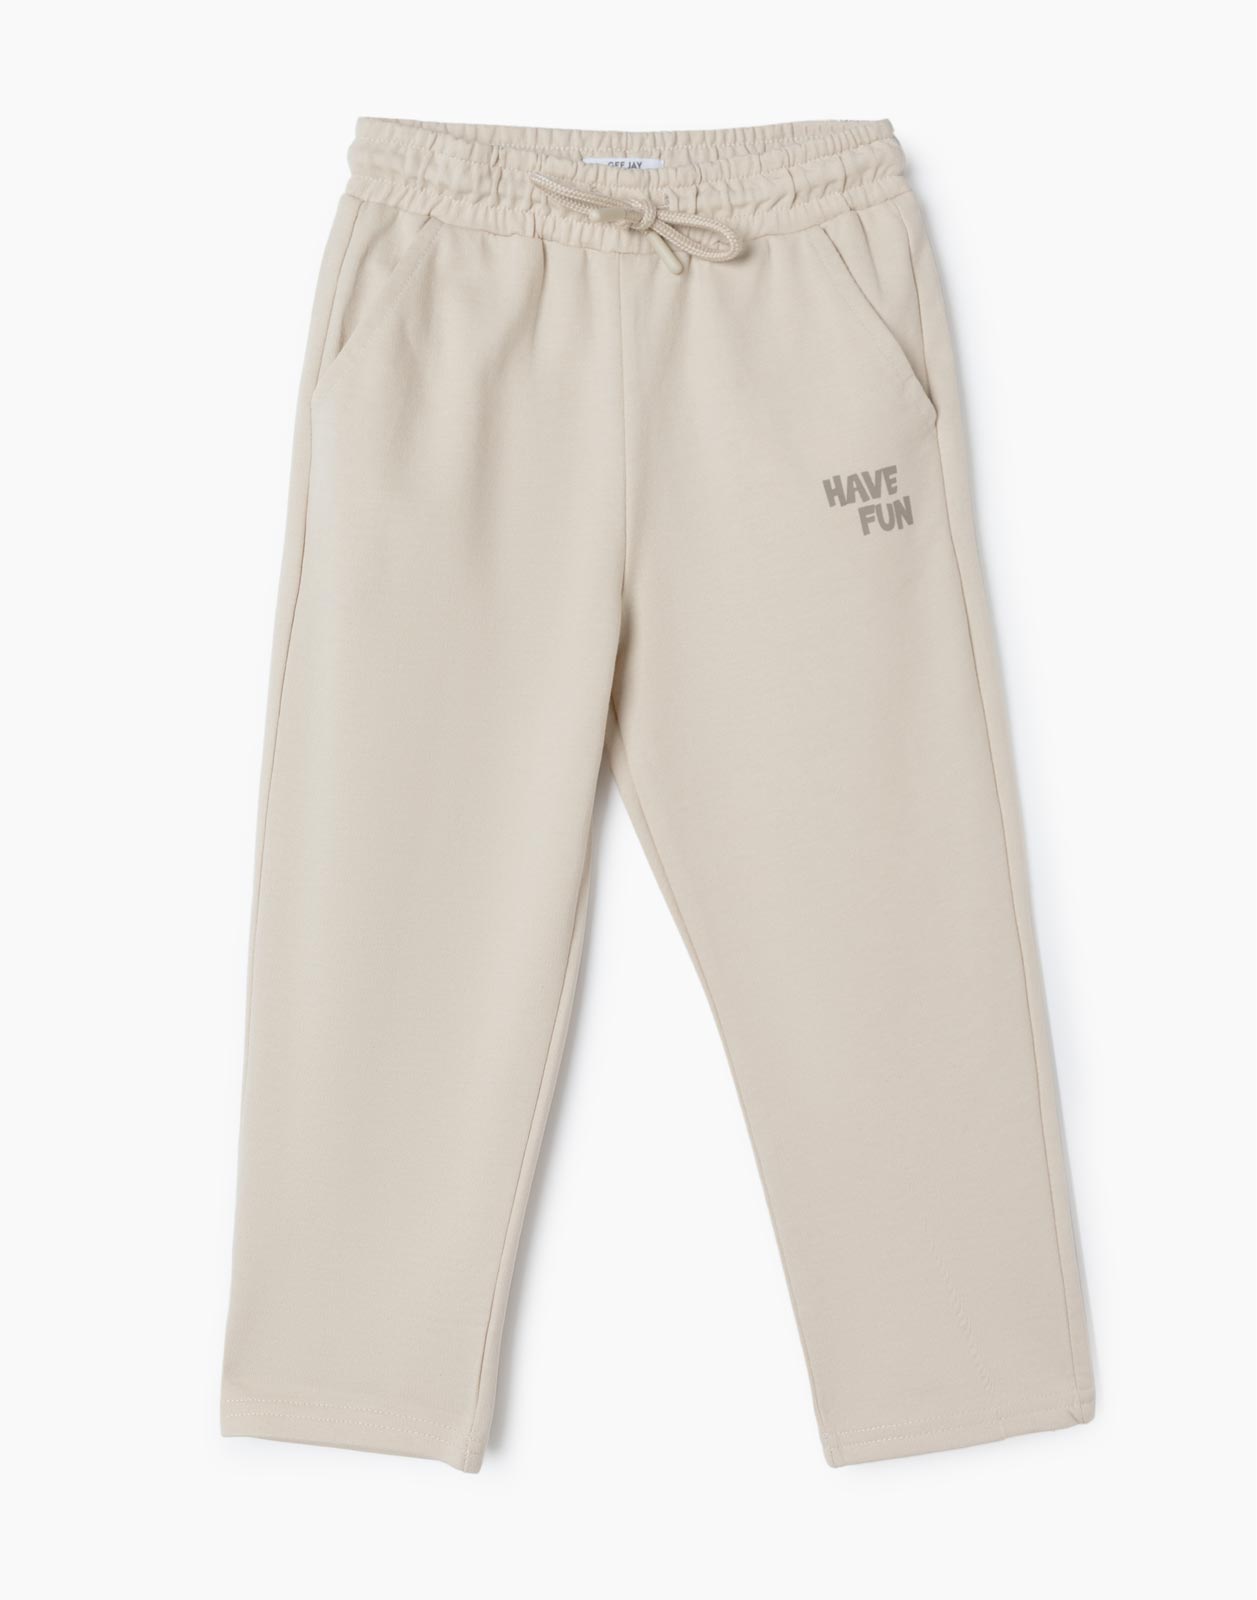 Бежевые спортивные брюки Comfort с надписью Have Fun для мальчика р.110